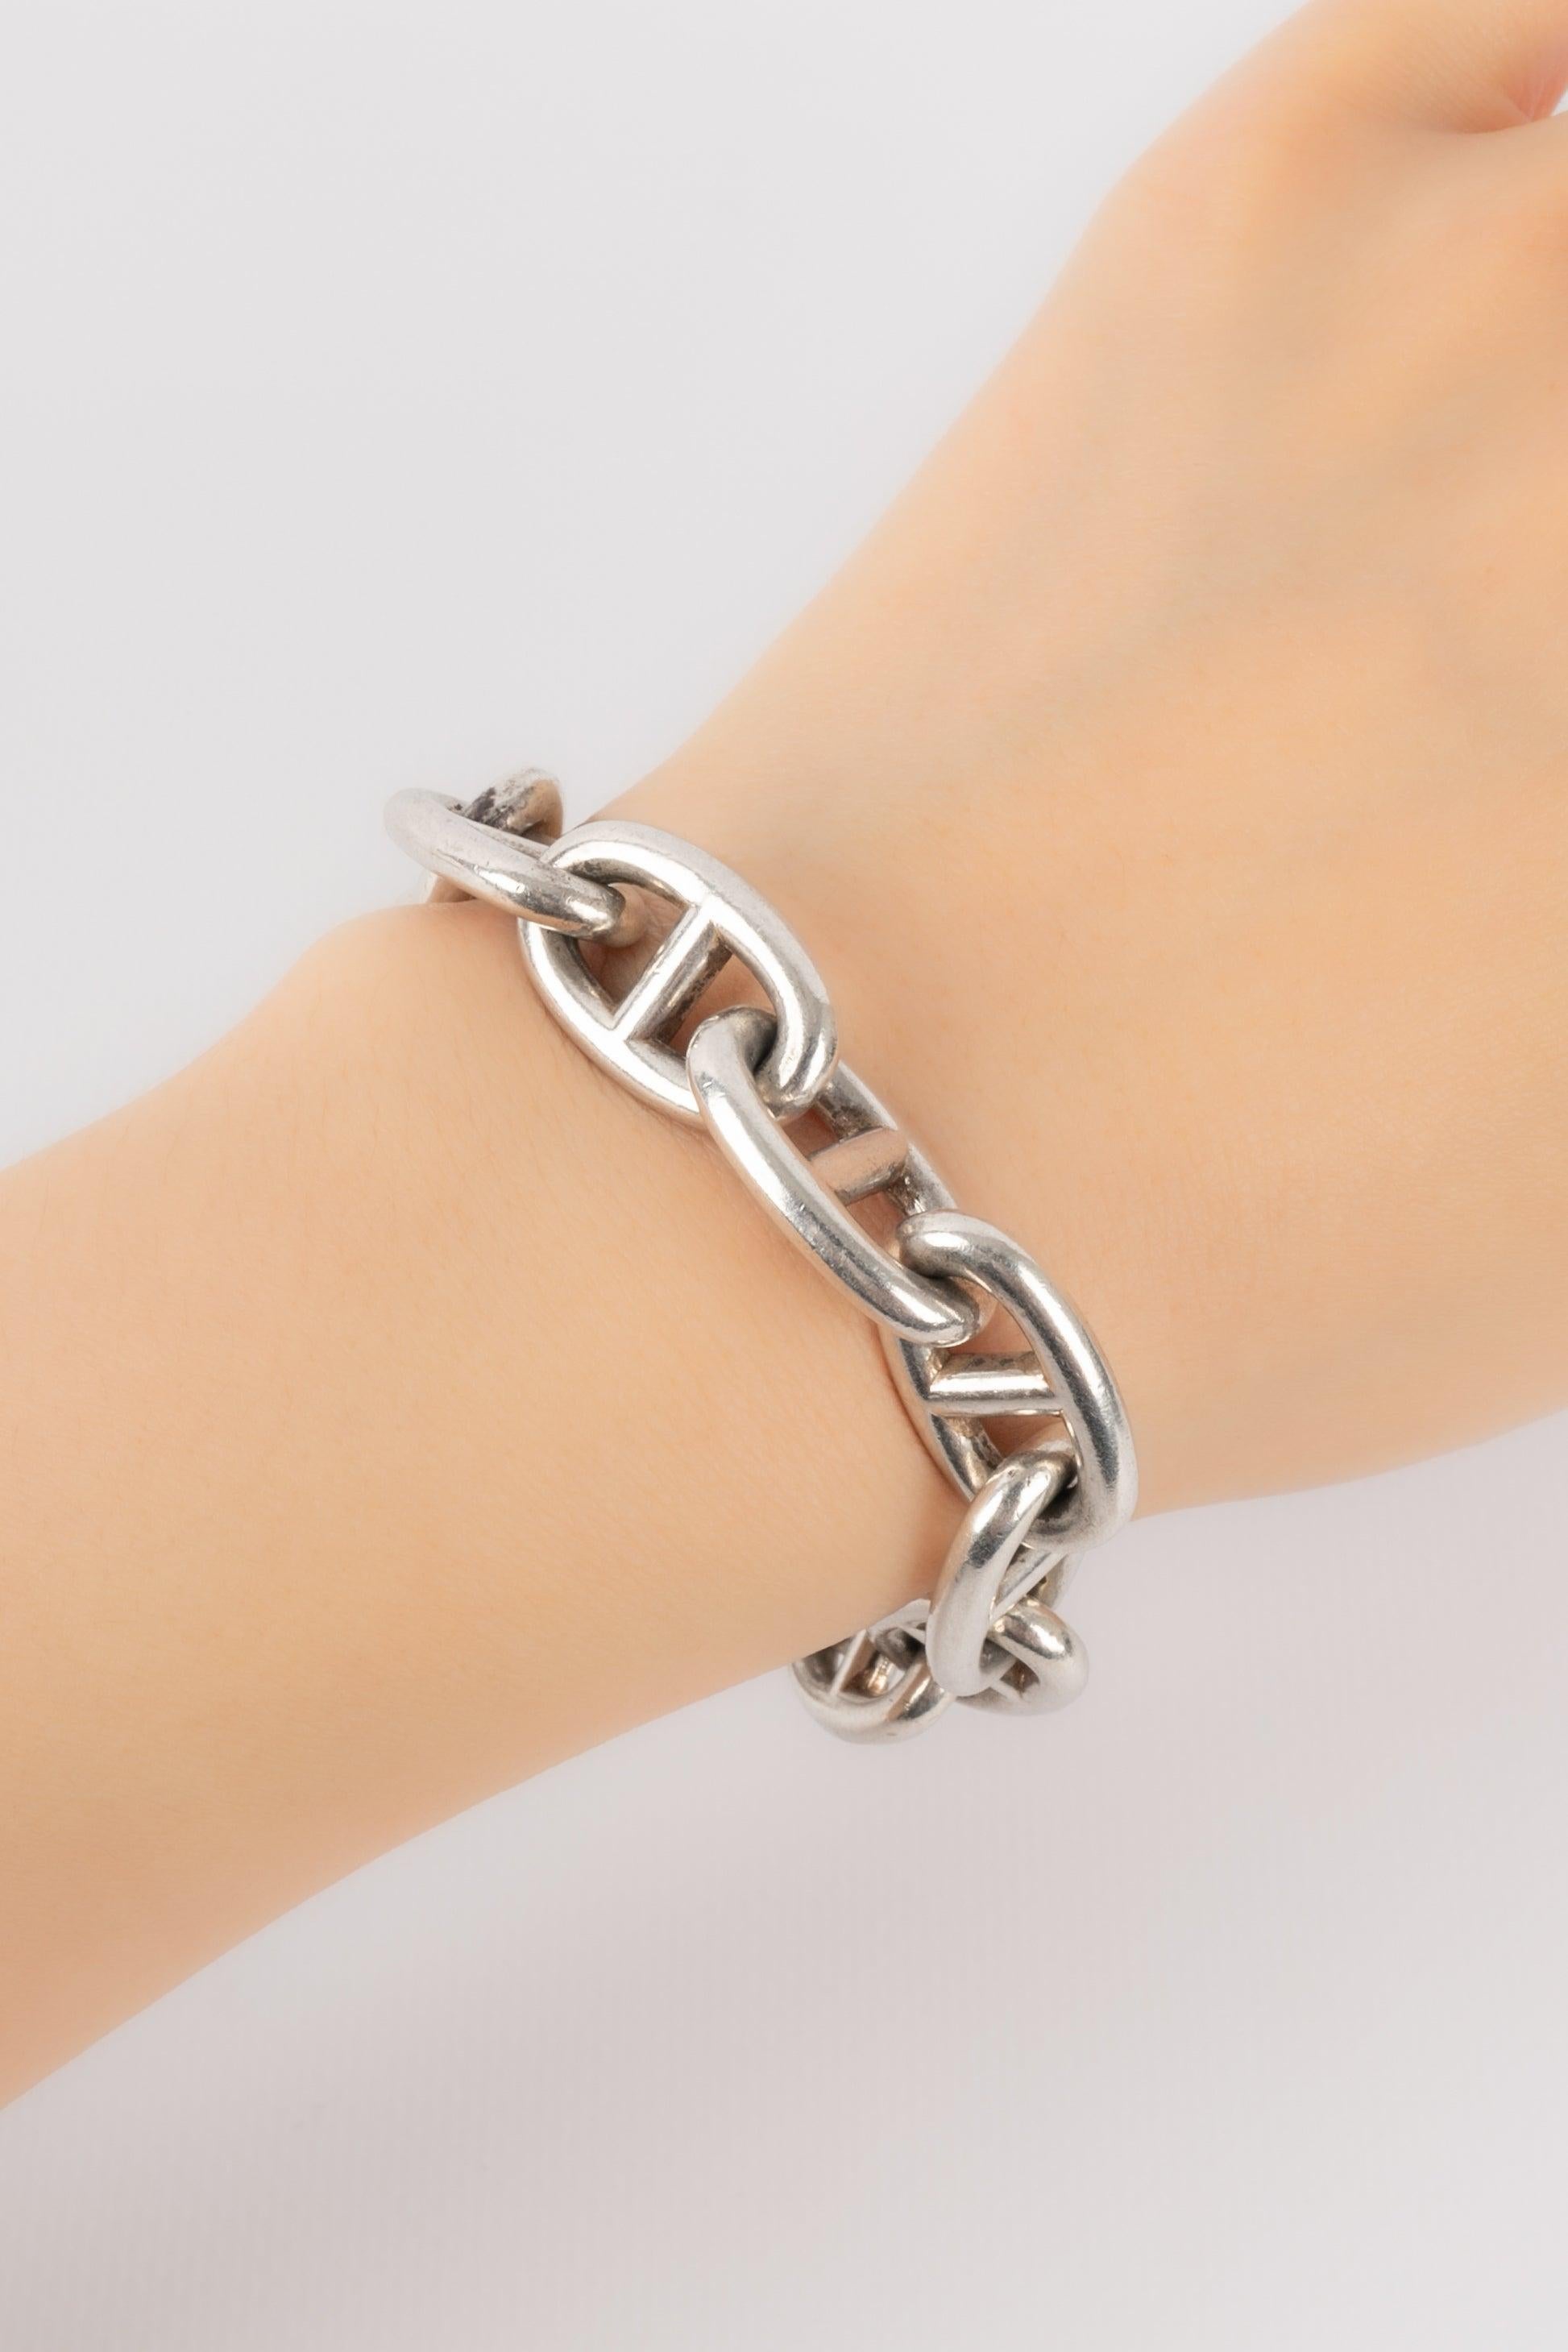 Hermès Silver Anchor Chain Bracelet For Sale 1